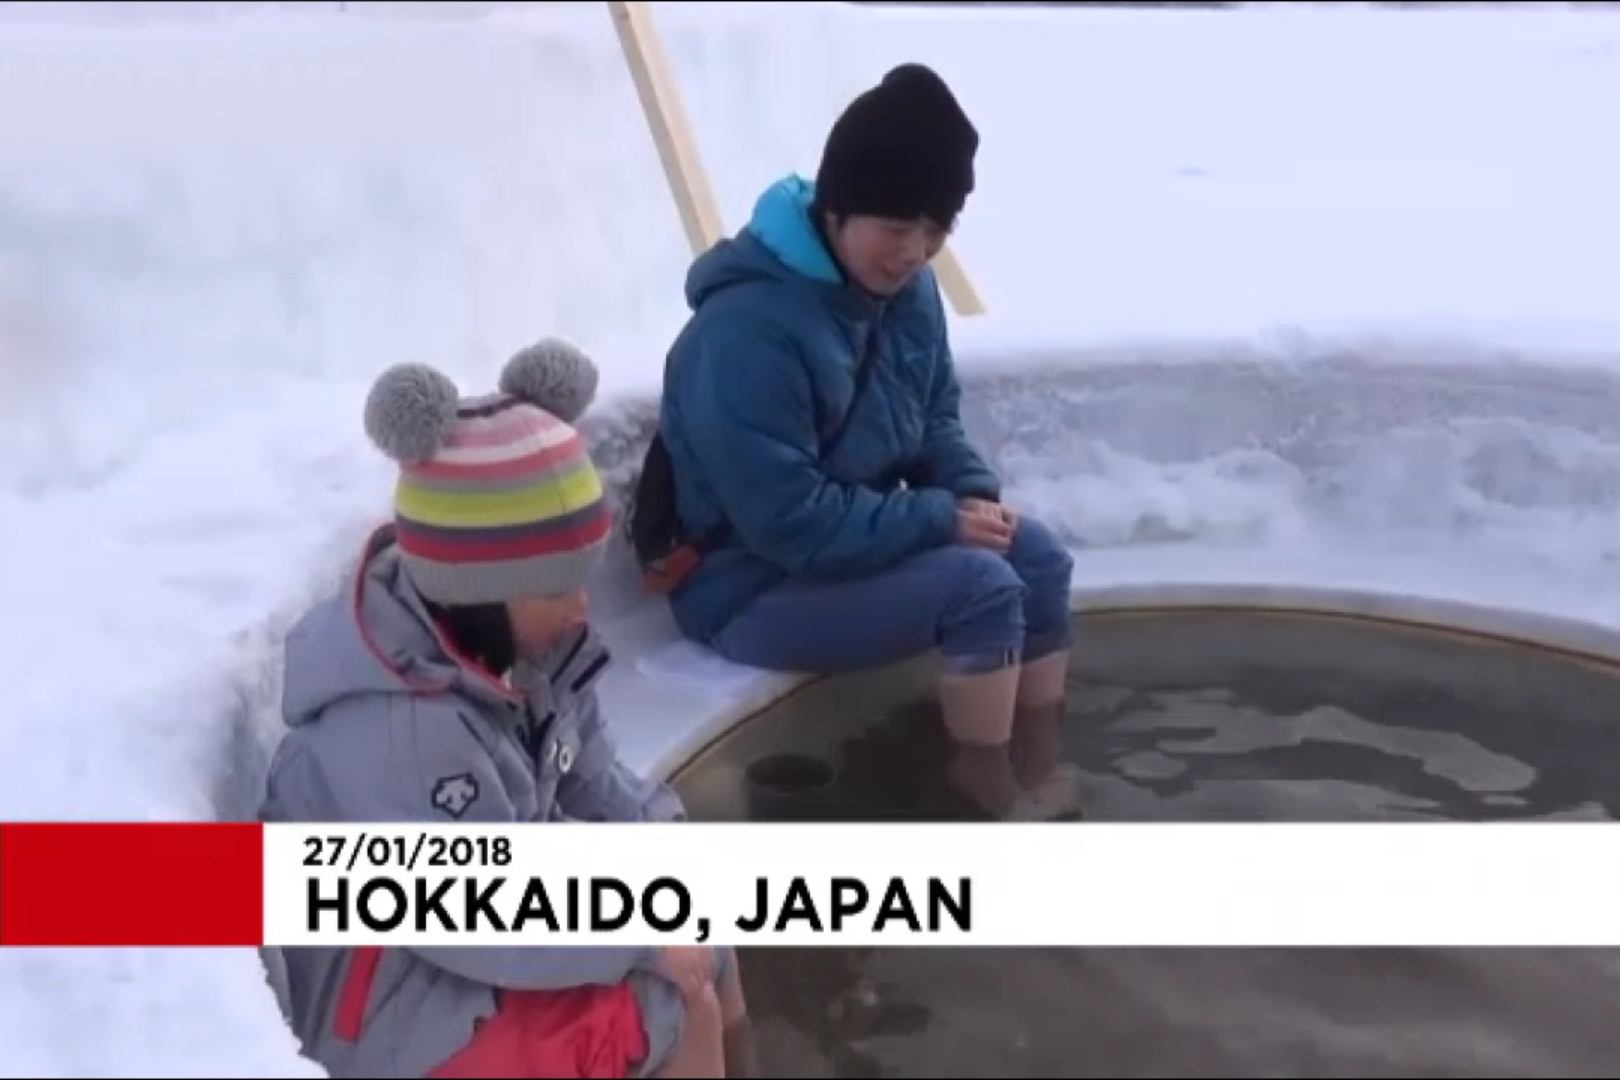 فیلم | جشنواره دریاچه یخی در ژاپن